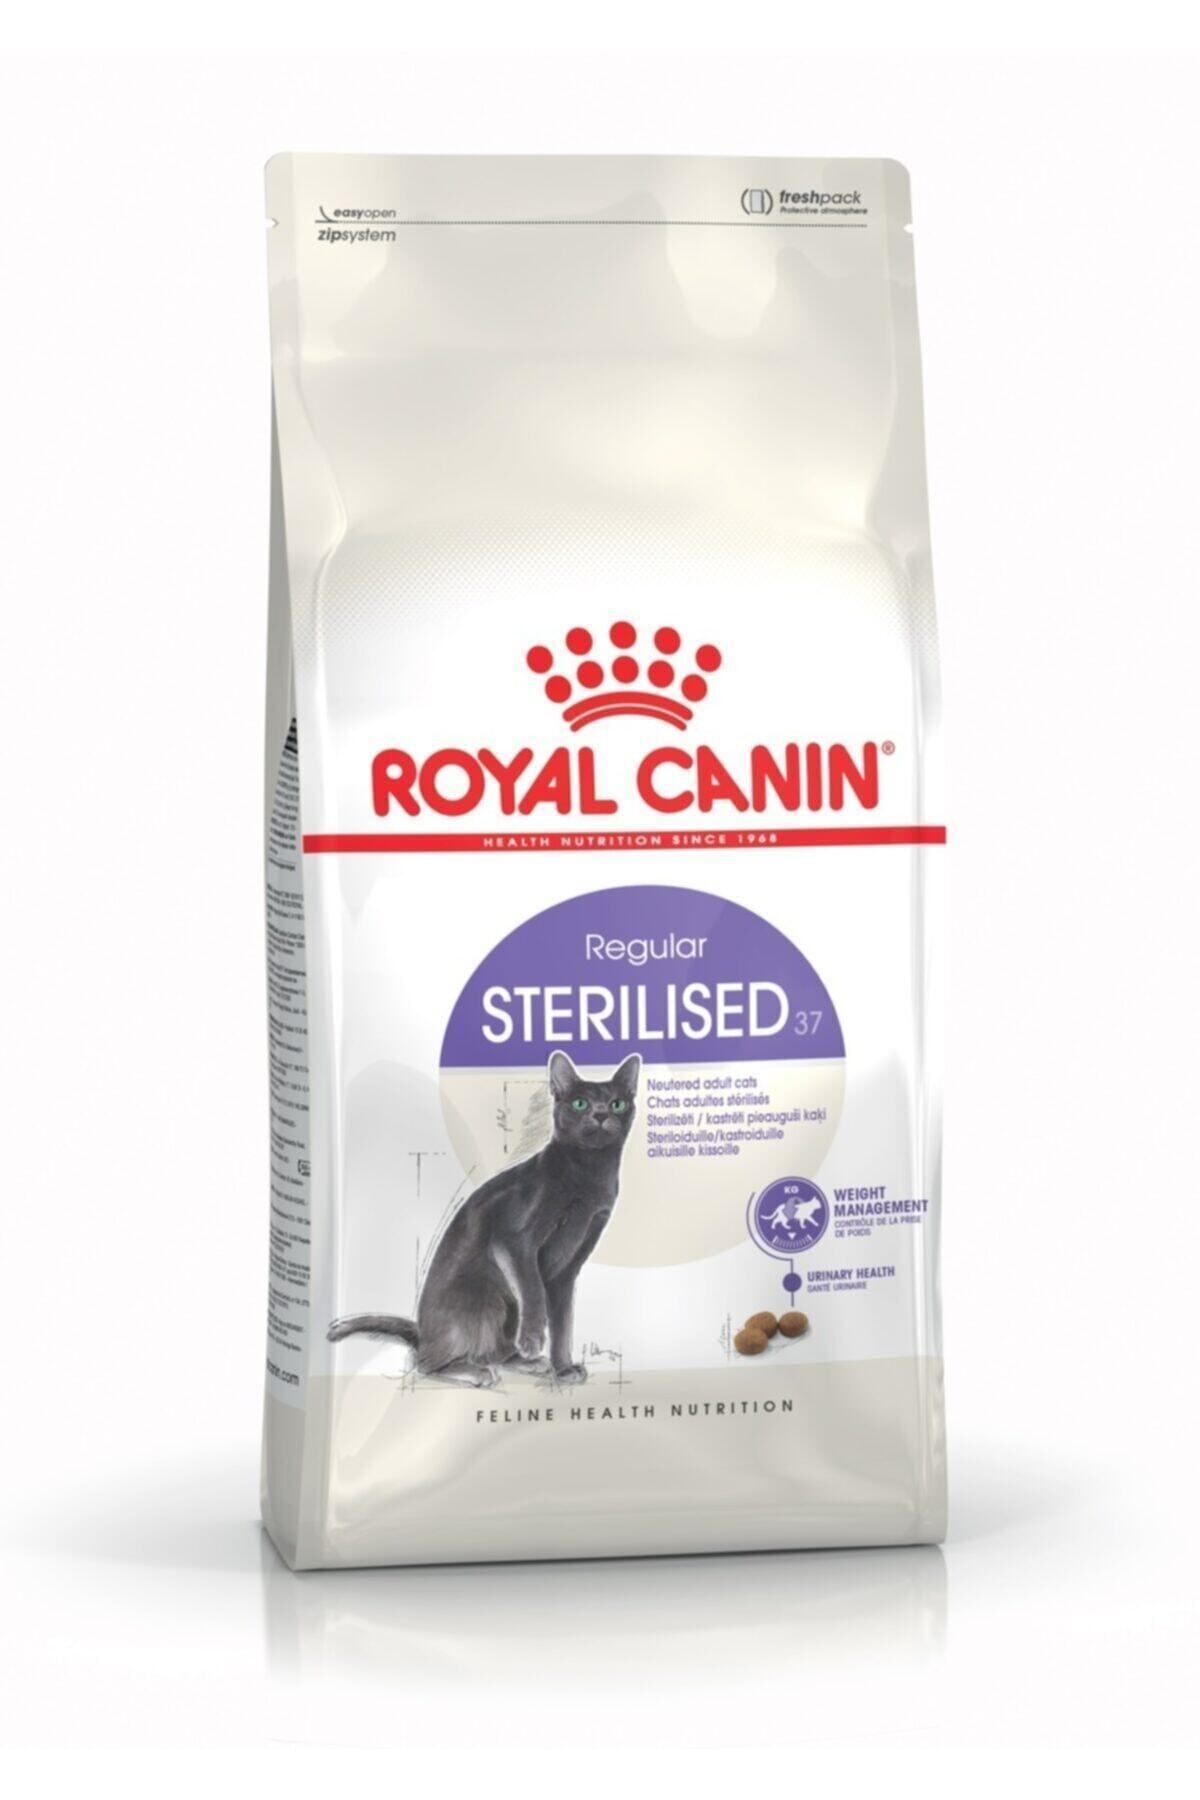 Royal Canin Kısırlaştırılmış Kuru Kedi Maması Kısır Mama 4 Kg Sterilised 37